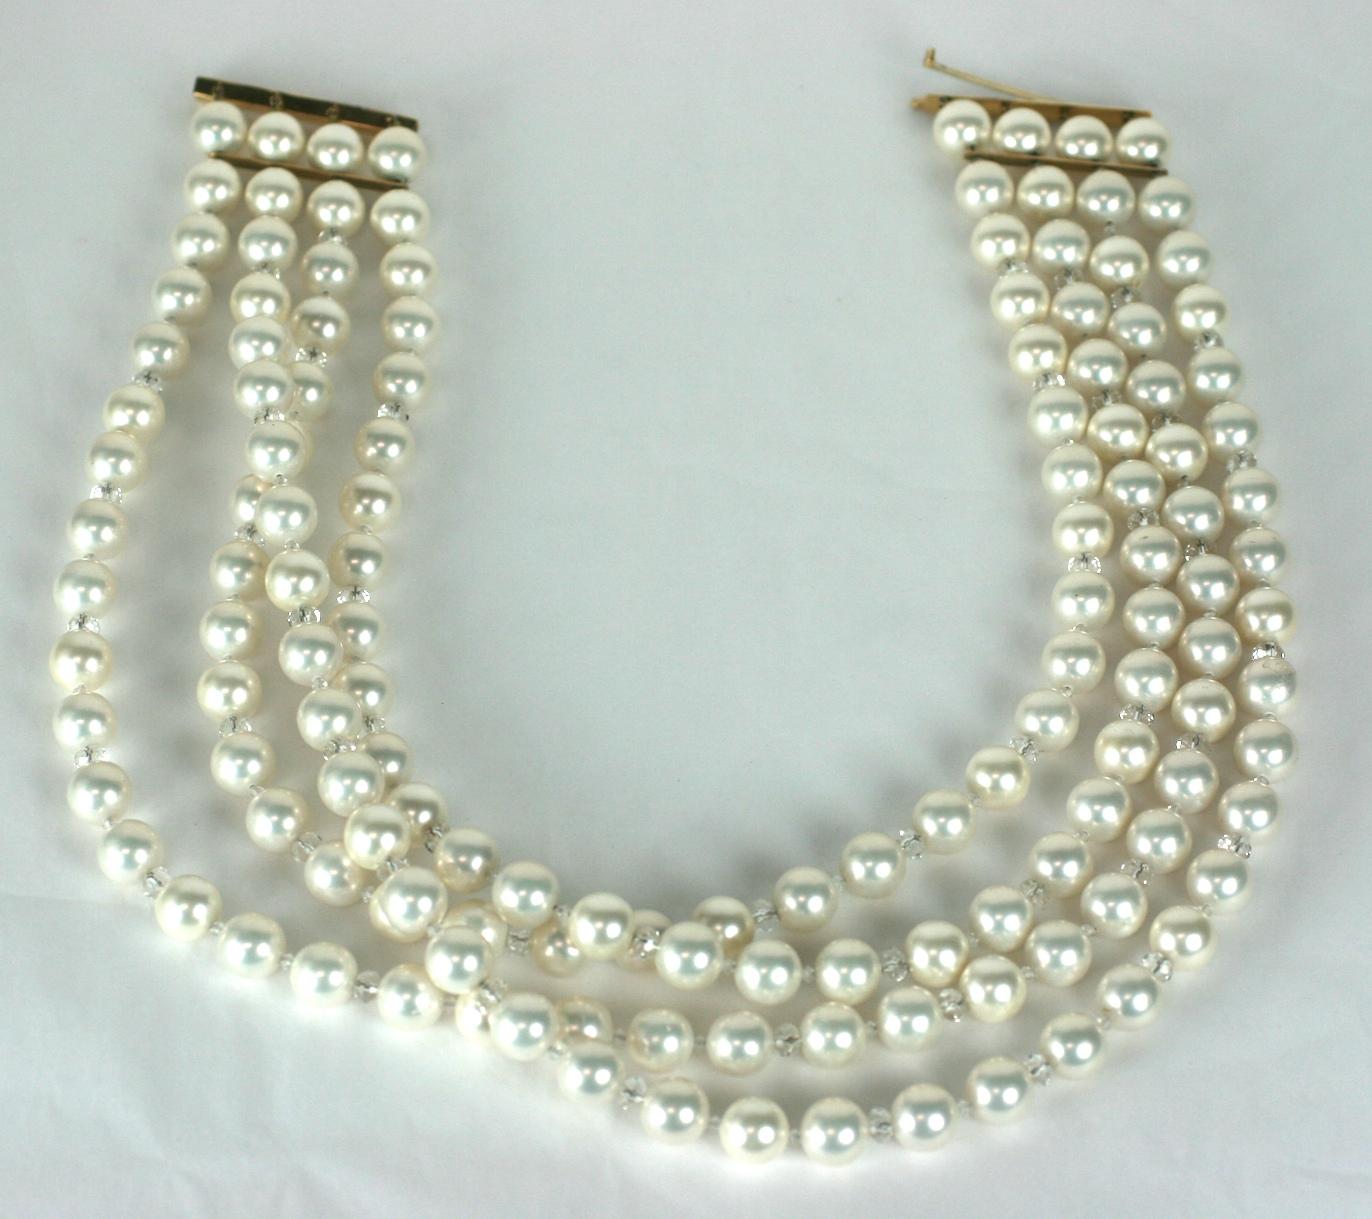 Collier oversize en fausses perles et or des années 1980. Collier sur mesure avec 4 rangs de fausses perles de 10 mm (qui sont assez lourdes car il s'agit probablement de perles de nacre recouvertes d'une couche de nacre). 
Ces perles sont toutes